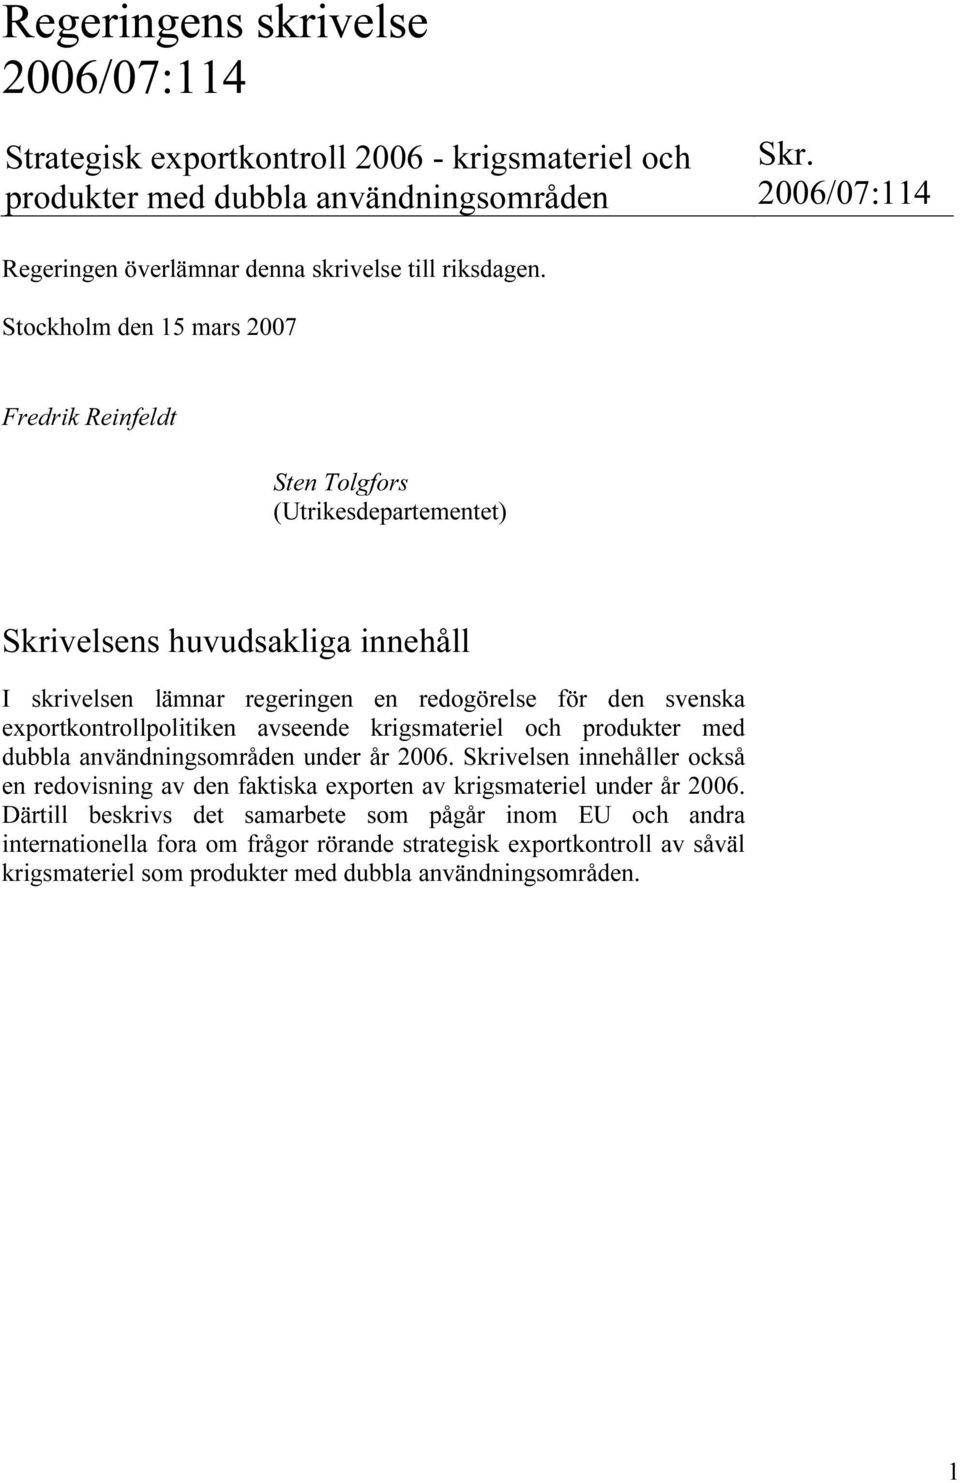 Stockholm den 15 mars 2007 Fredrik Reinfeldt Sten Tolgfors (Utrikesdepartementet) Skrivelsens huvudsakliga innehåll I skrivelsen lämnar regeringen en redogörelse för den svenska